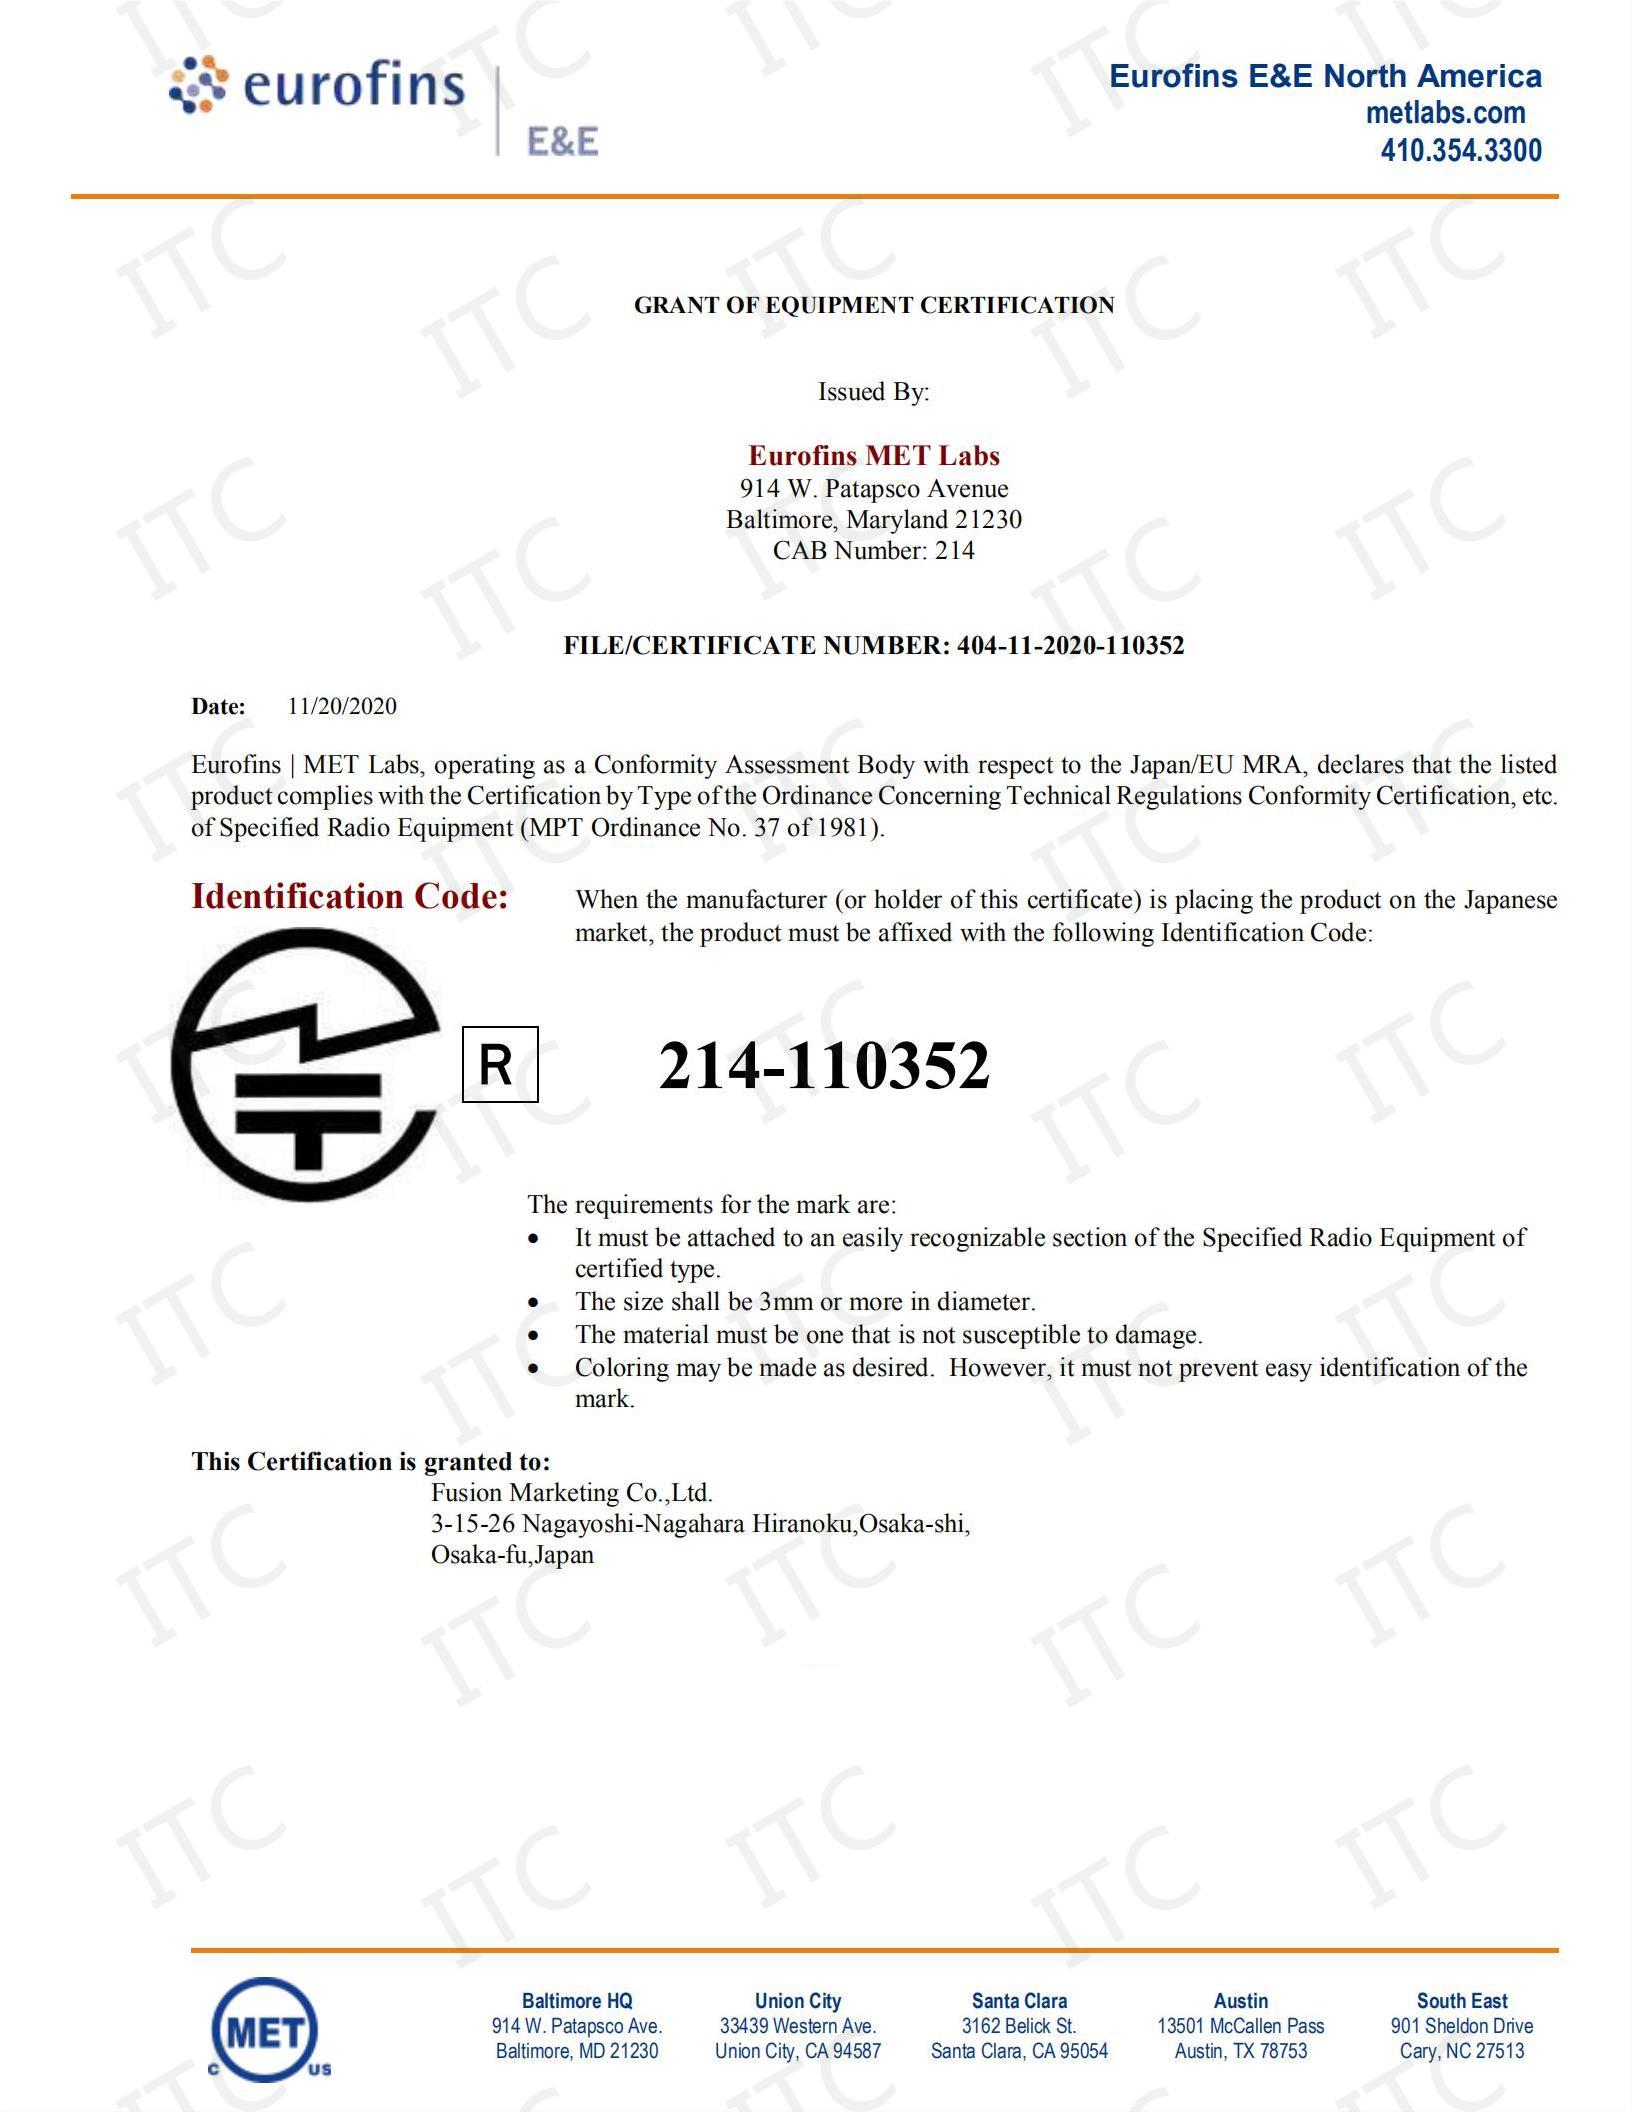 耳机TELEC认证标准 深圳市法拉商品检验技术有限公司